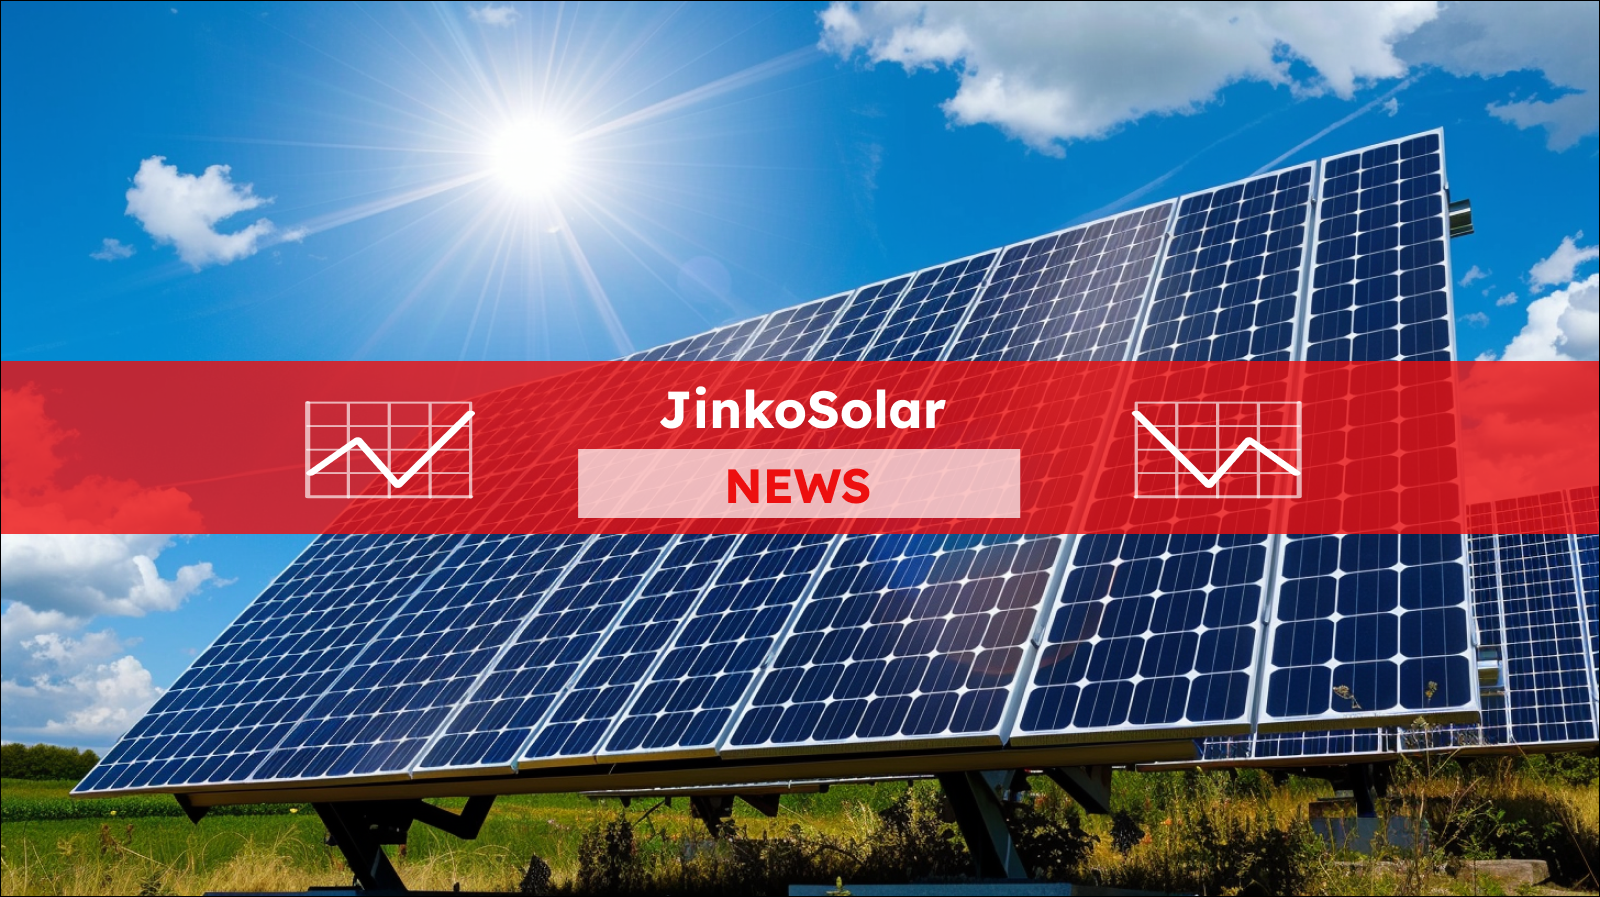 Solarmodulen auf einem Feld unter einem strahlend blauen Himmel mit der Sonne, mit einem JinkoSolar NEWS Banner